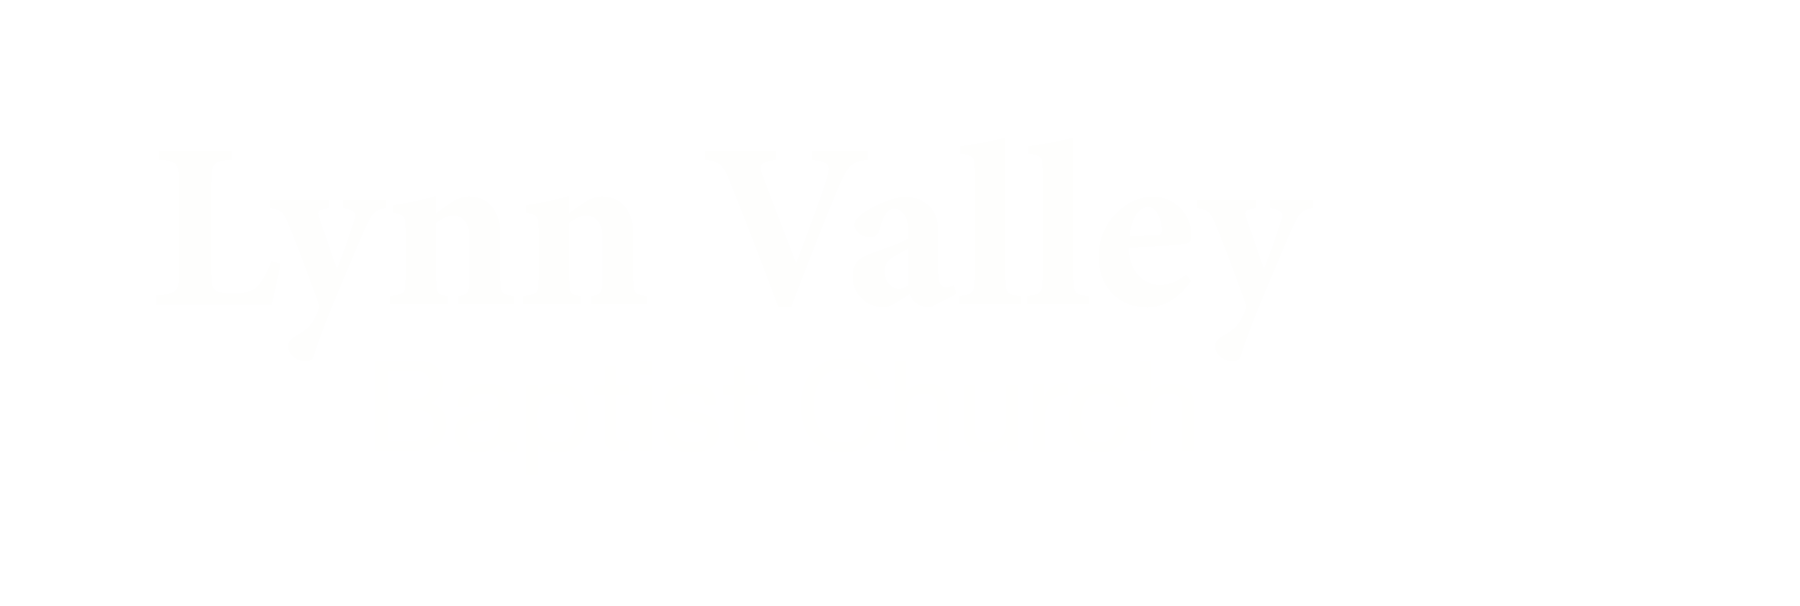 Lynn Valley Baptist 